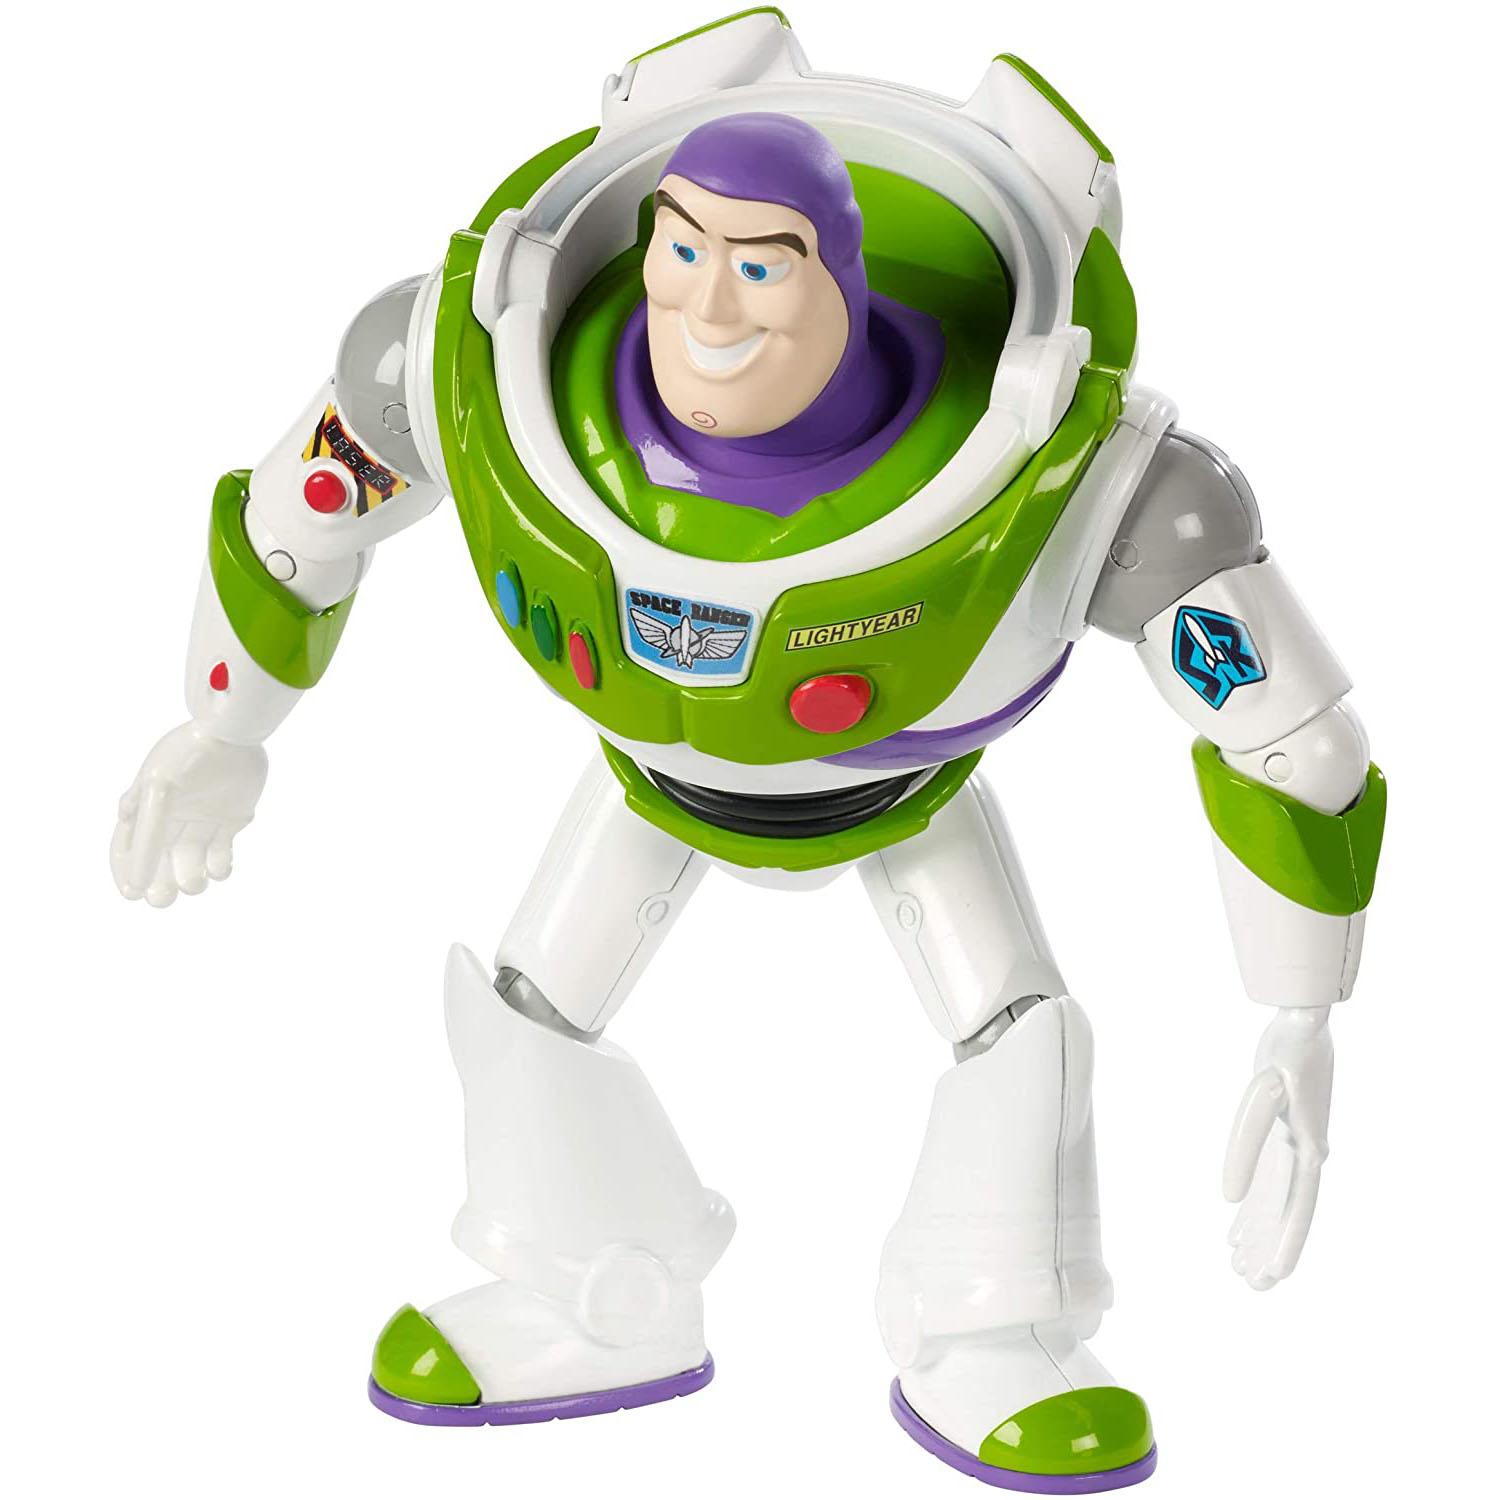 Disney Pixar Toy Story Buzz Lightyear Figure for $5.92